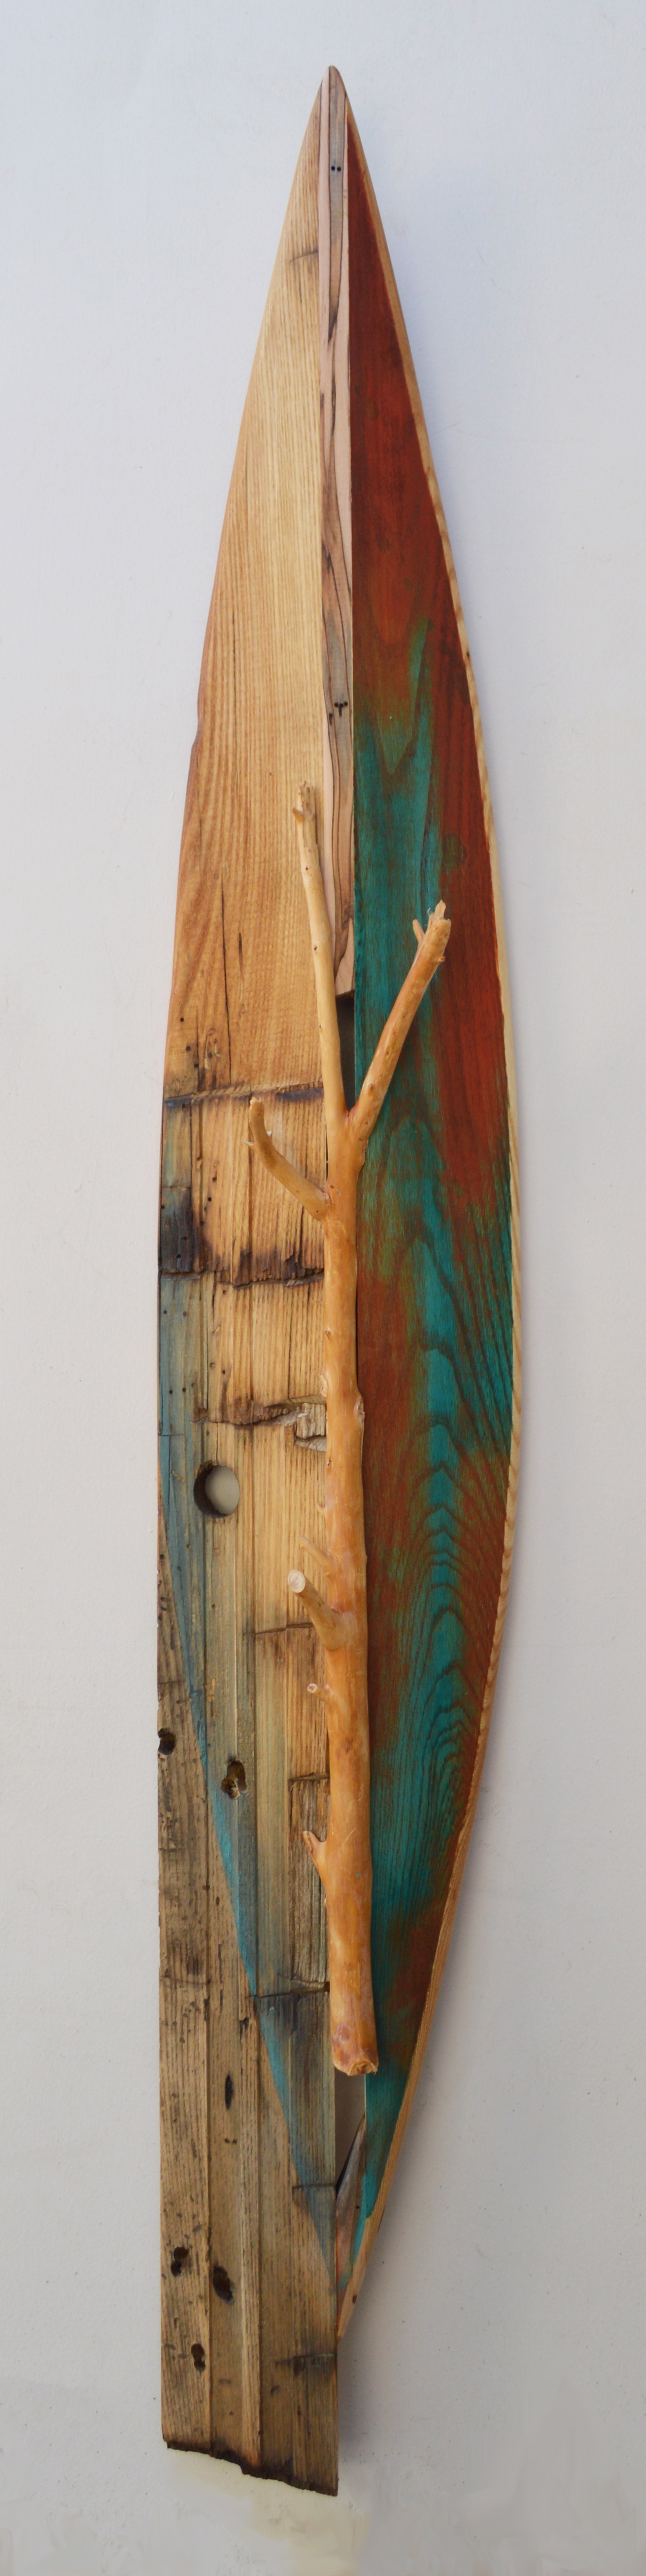 Canoe 34 by Melinda Rosenberg